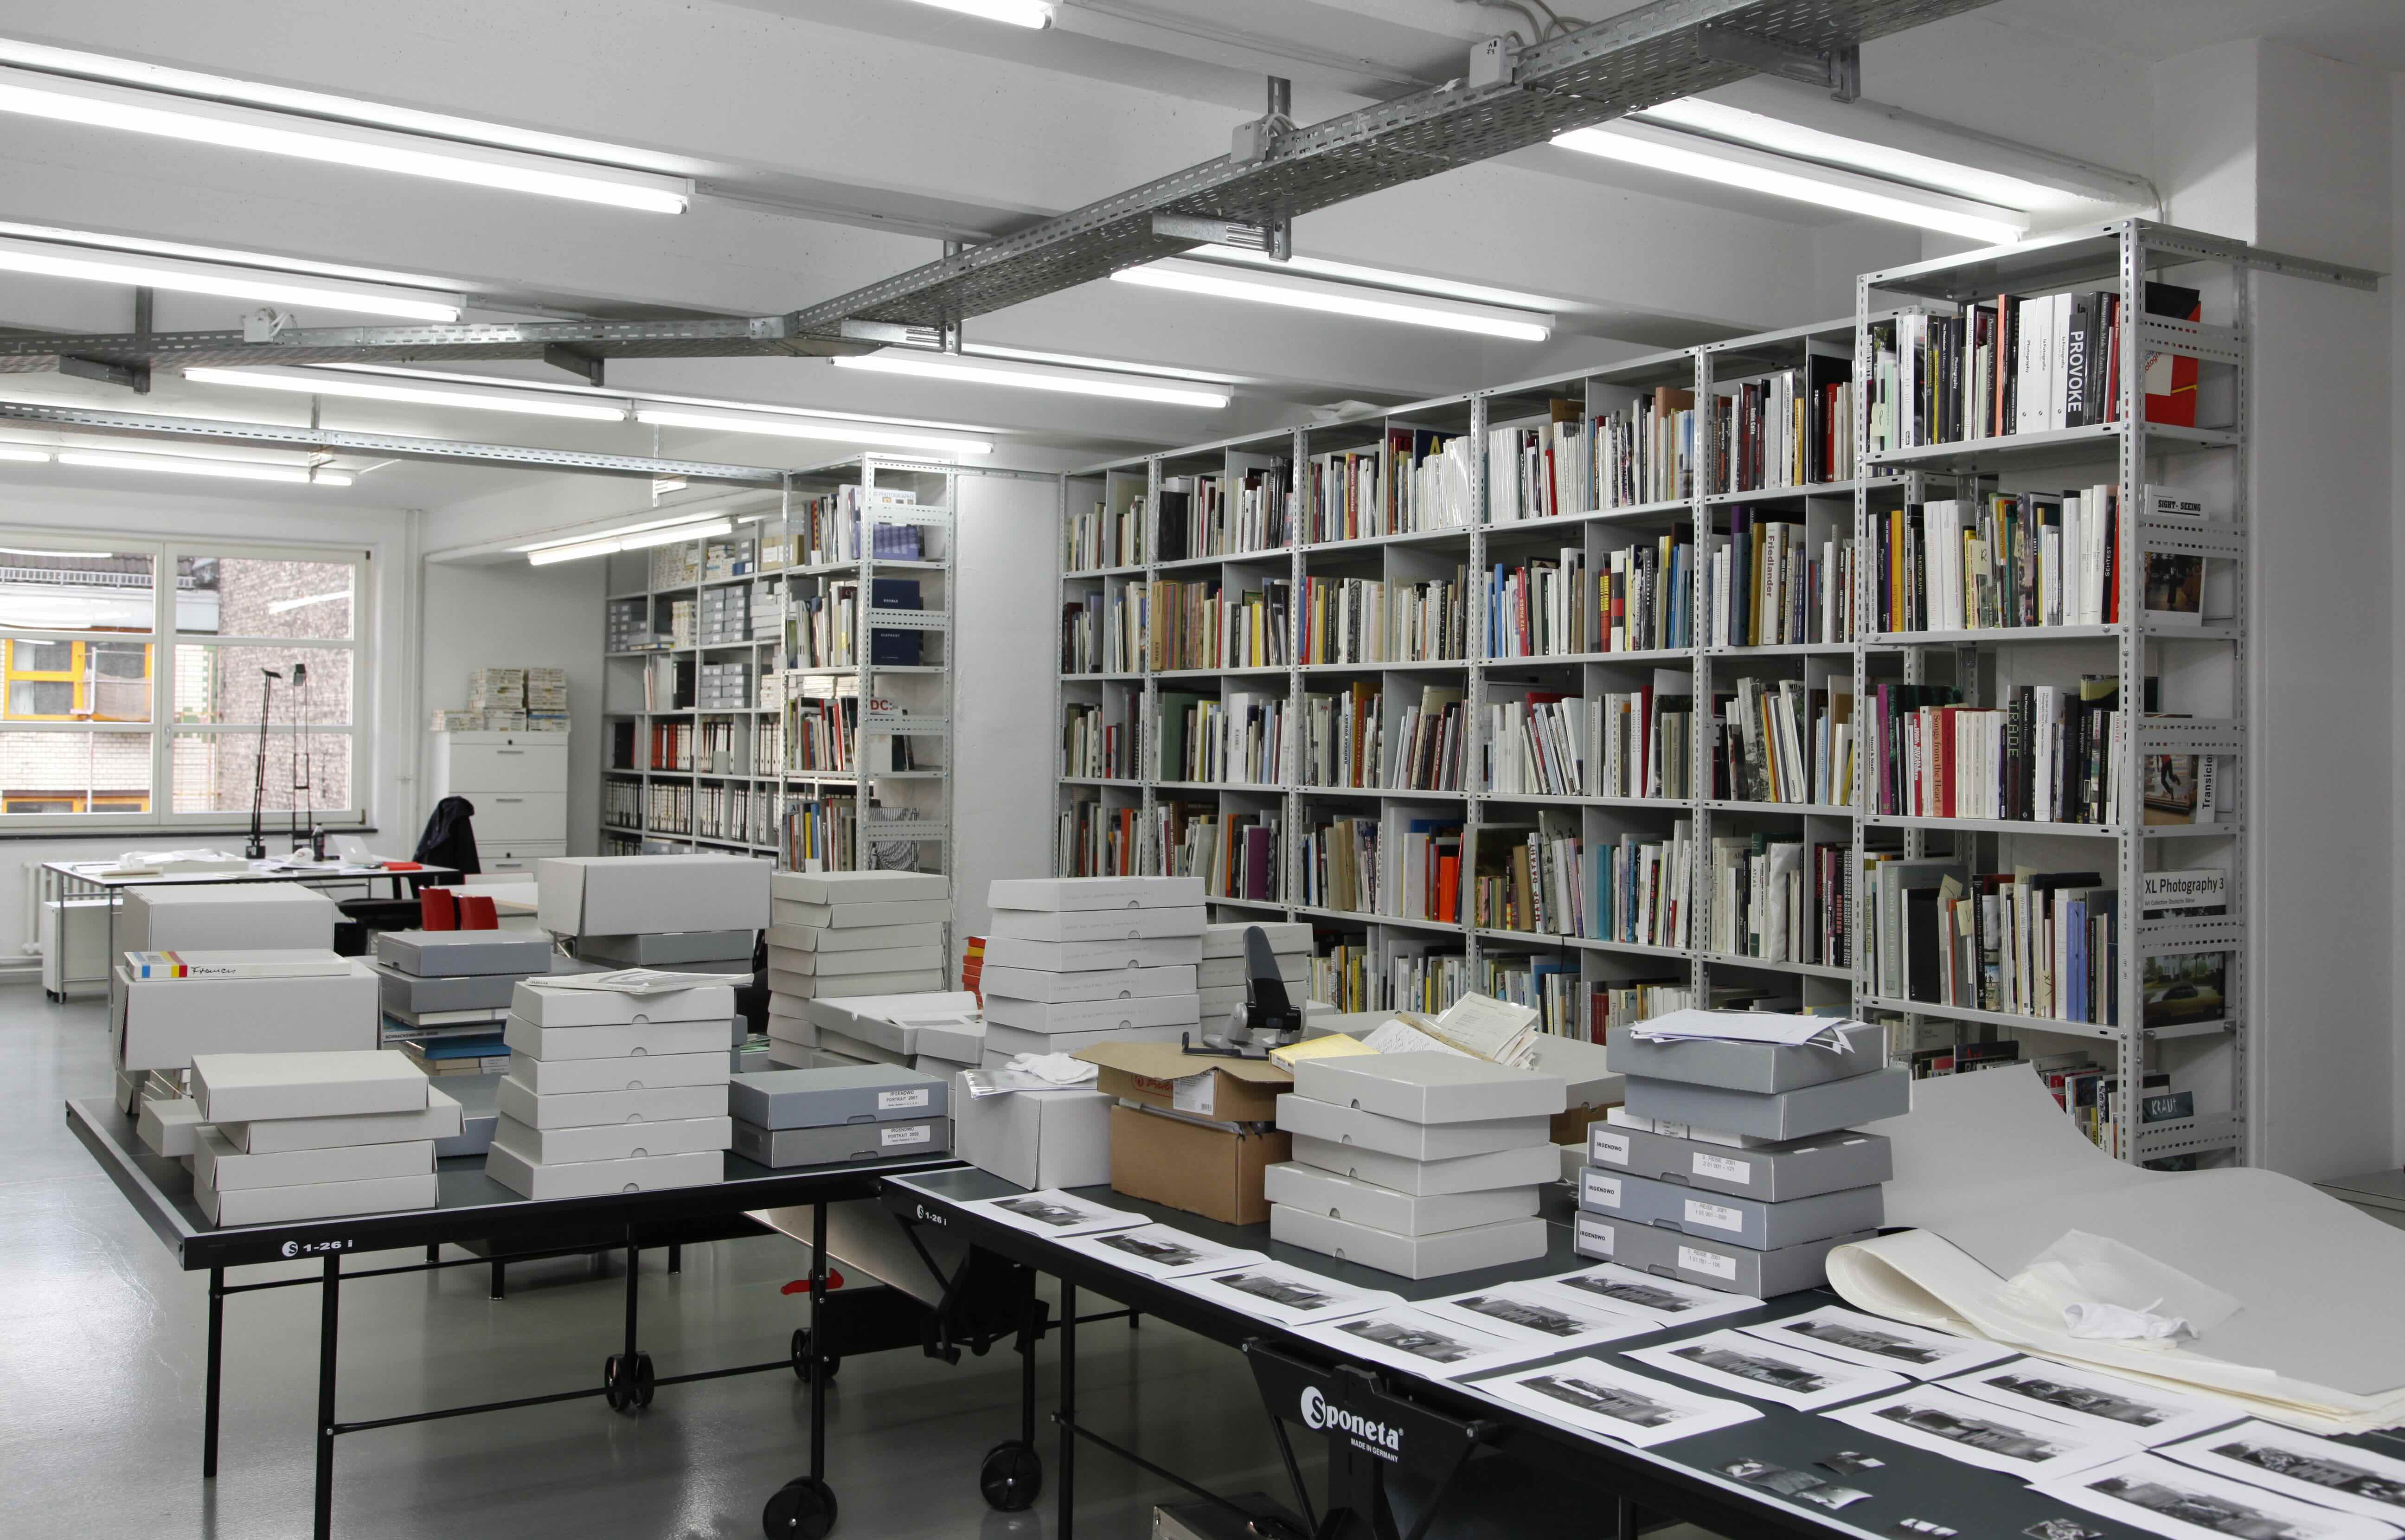 Einblick in die Berliner Räume des Archivs Michael Schmidt (mit der Fotobibliothek von Prof. Thomas Weski).